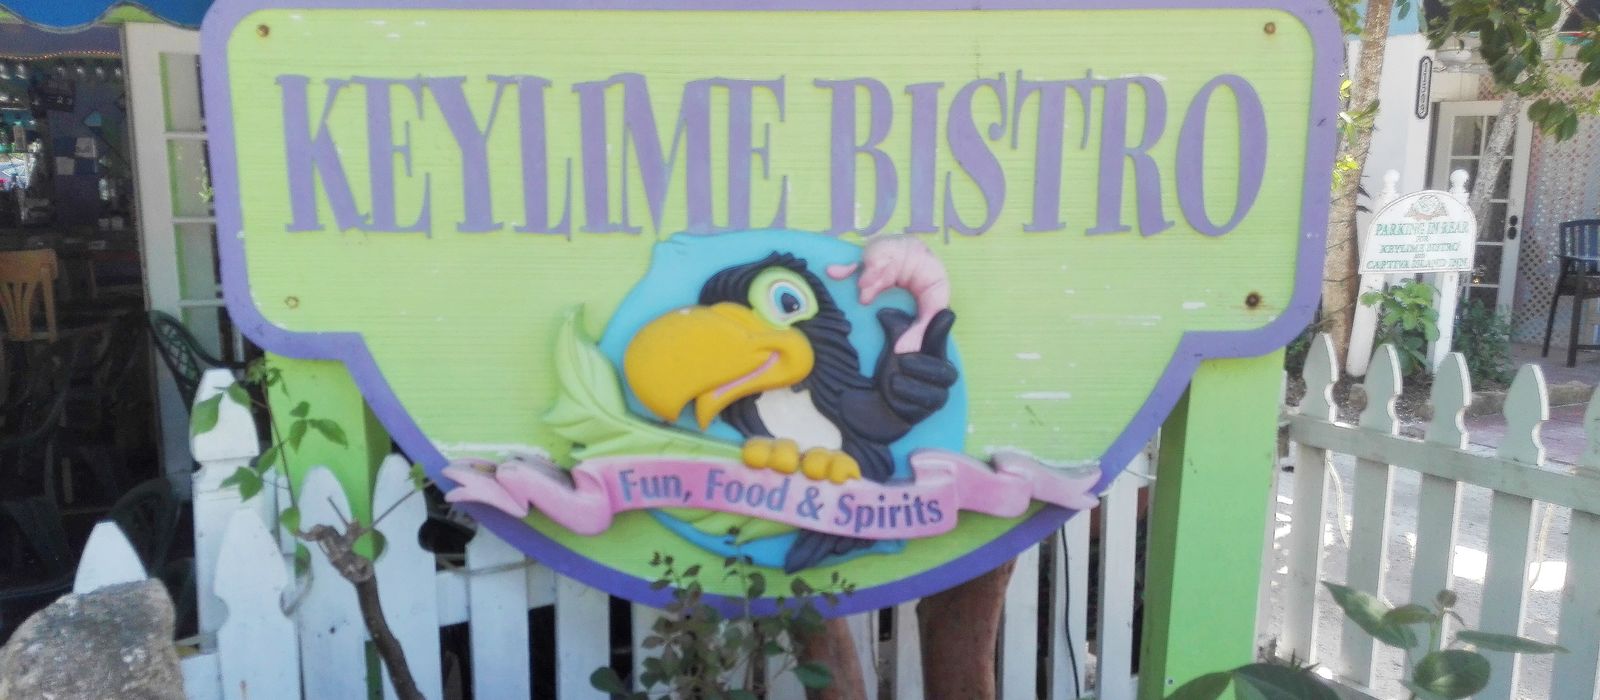 Key Lime Bistro auf Captiva Island